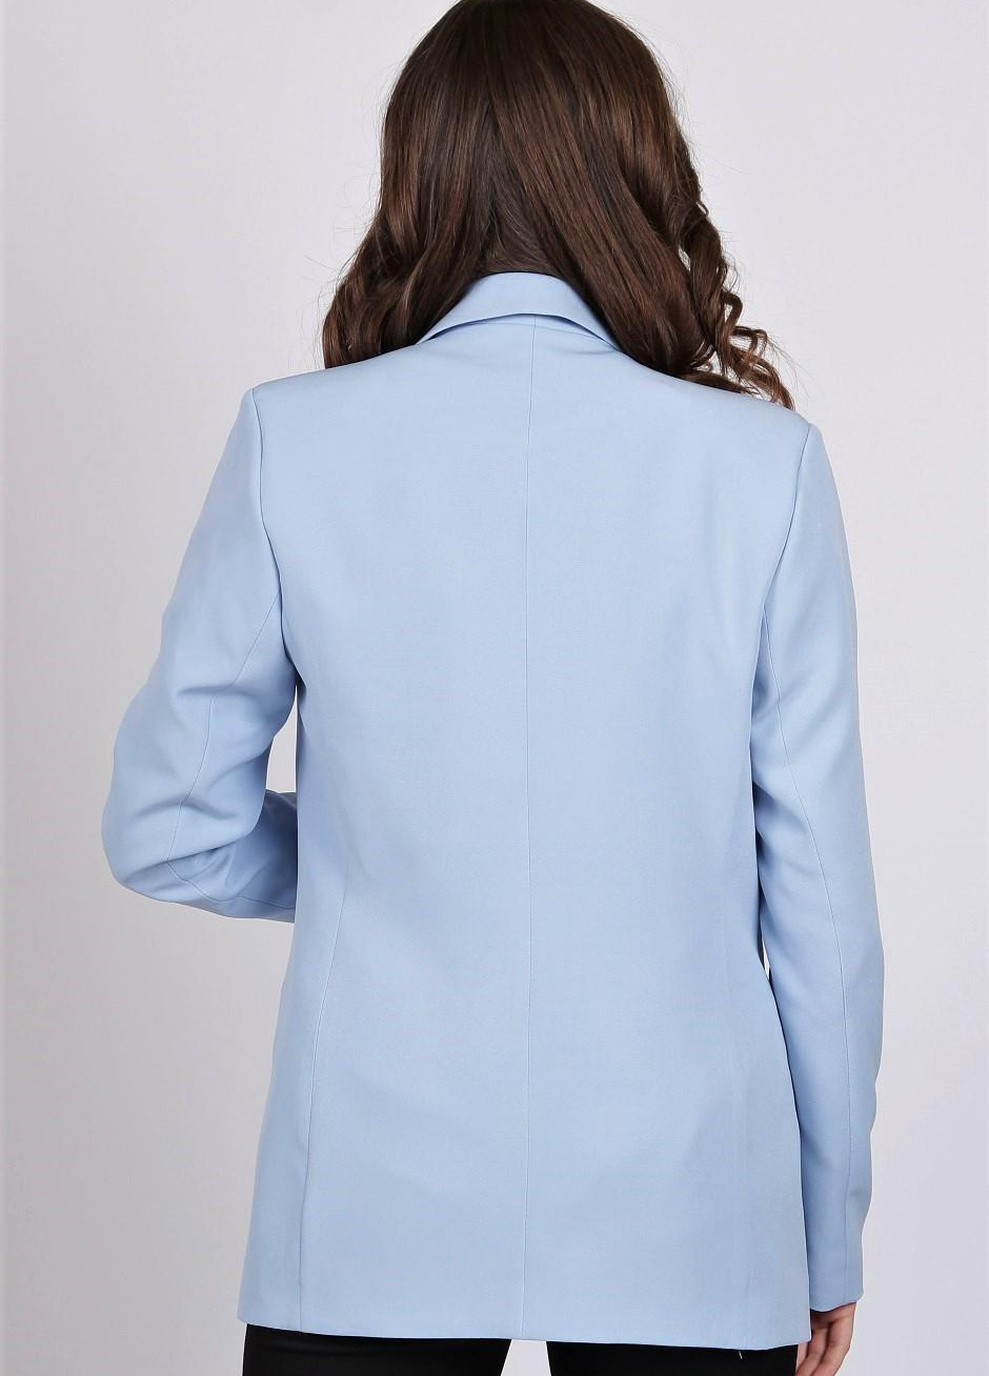 Голубой женский пиджак 029 креп голубой Актуаль - демисезонный